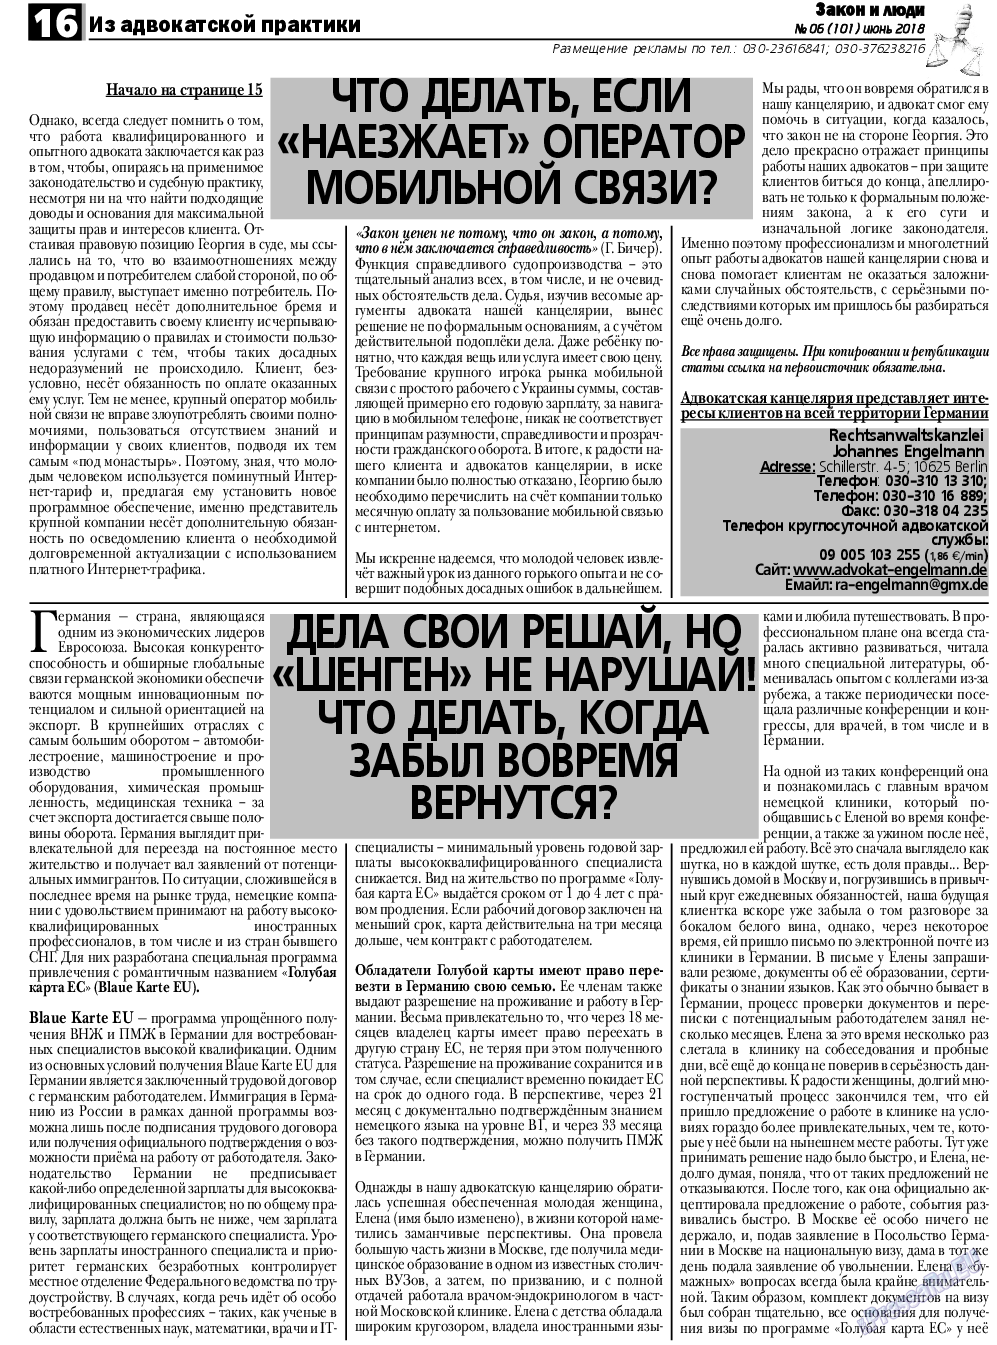 Закон и люди, газета. 2018 №6 стр.16